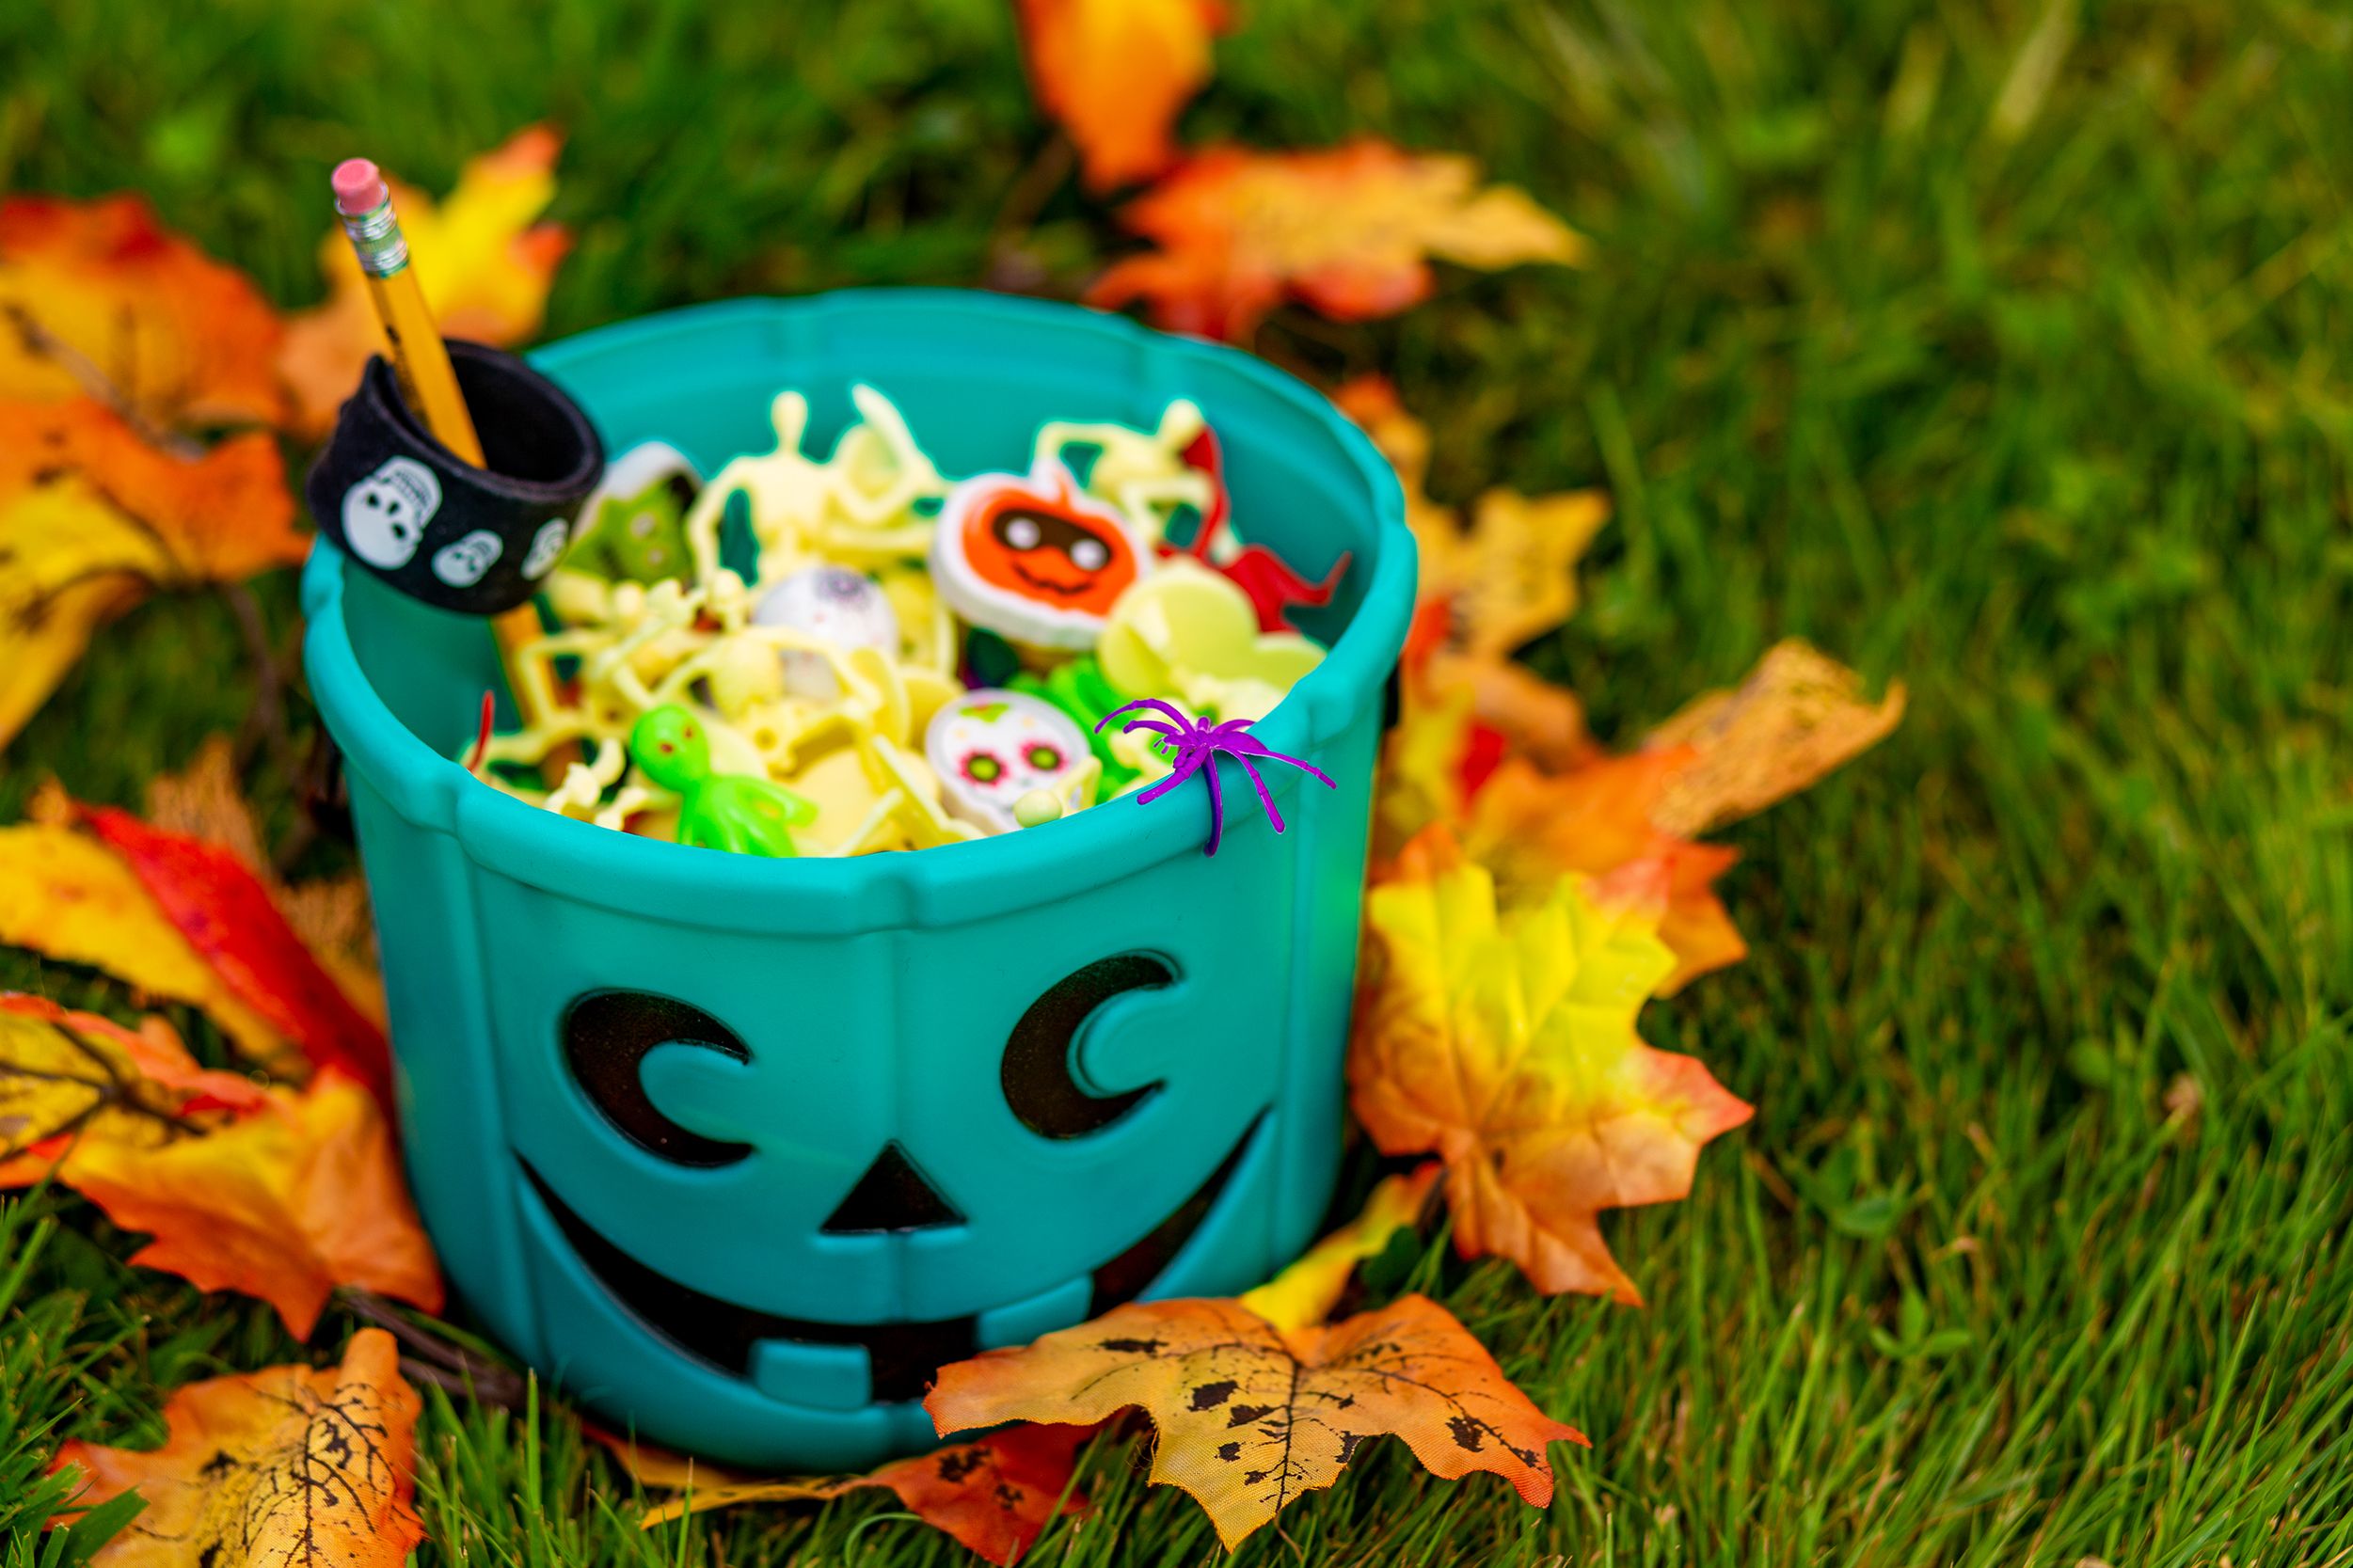 32 Best Non-Candy Halloween Treats - Halloween Candy Alternatives